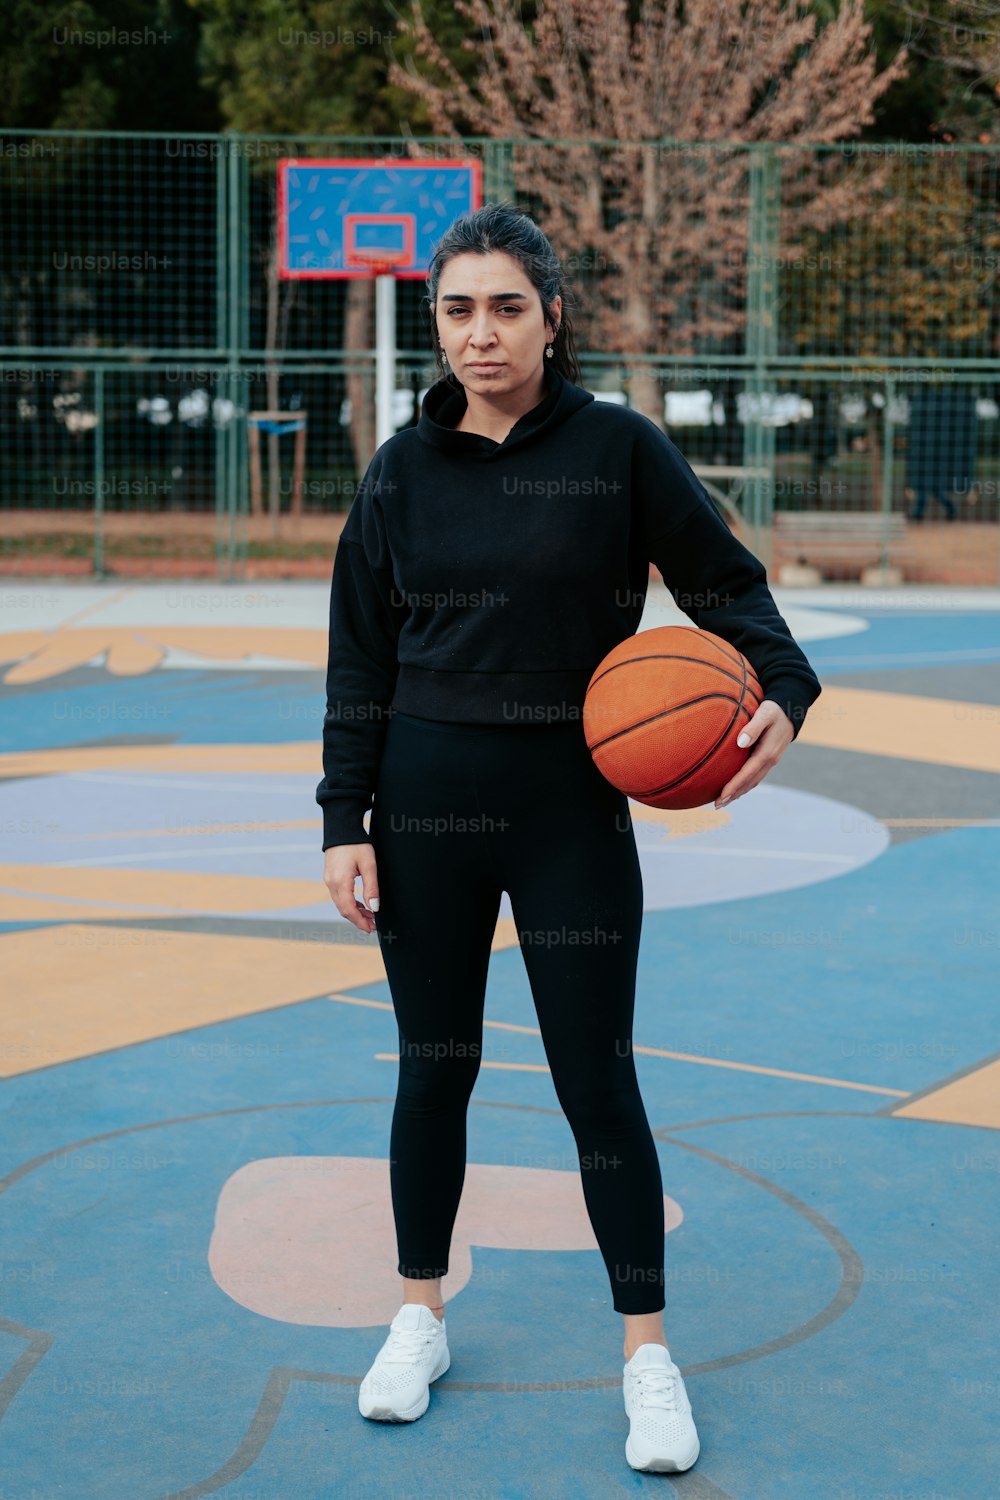 Una mujer sosteniendo una pelota de baloncesto en una cancha de baloncesto